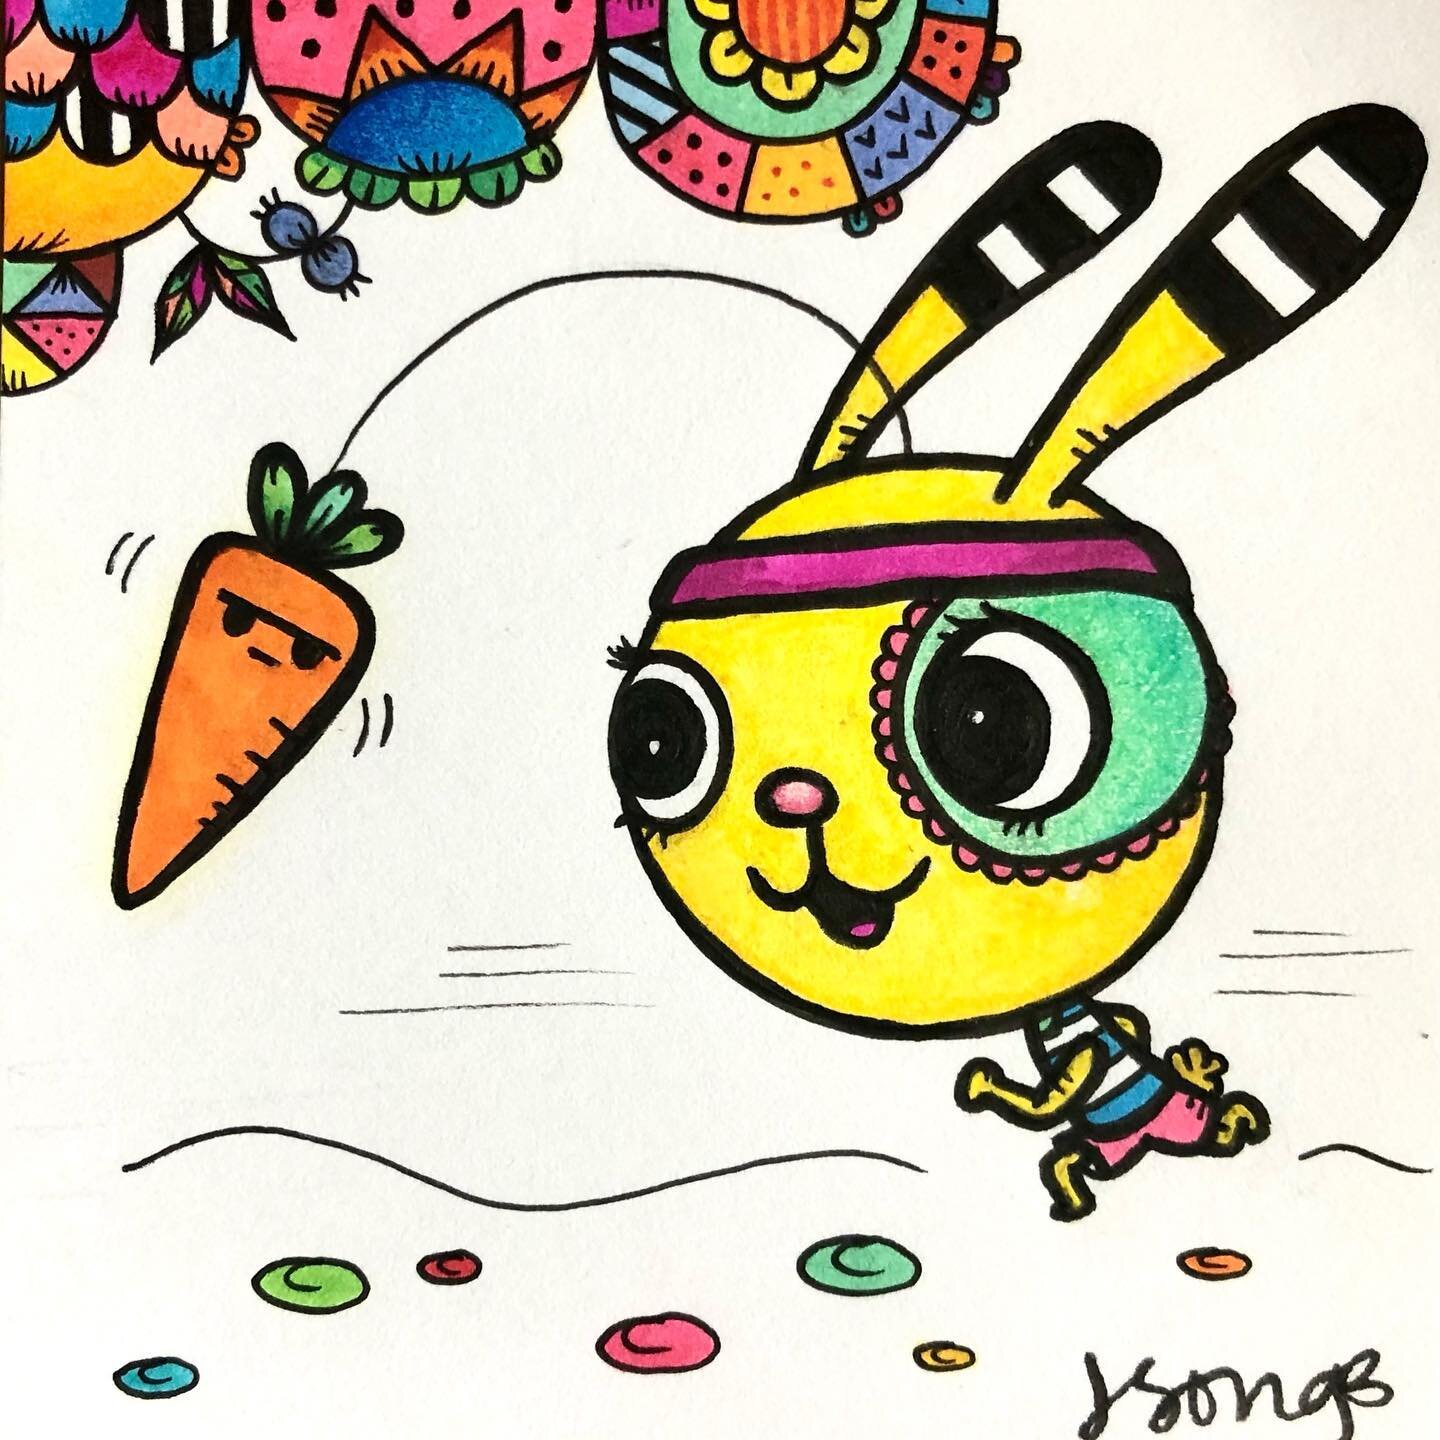 Keep your eyes on the prize! ✨ #keepgoing #motivation #happyart #colorful #drawing #positivity #MyBuddles #JSong #jsongdesign